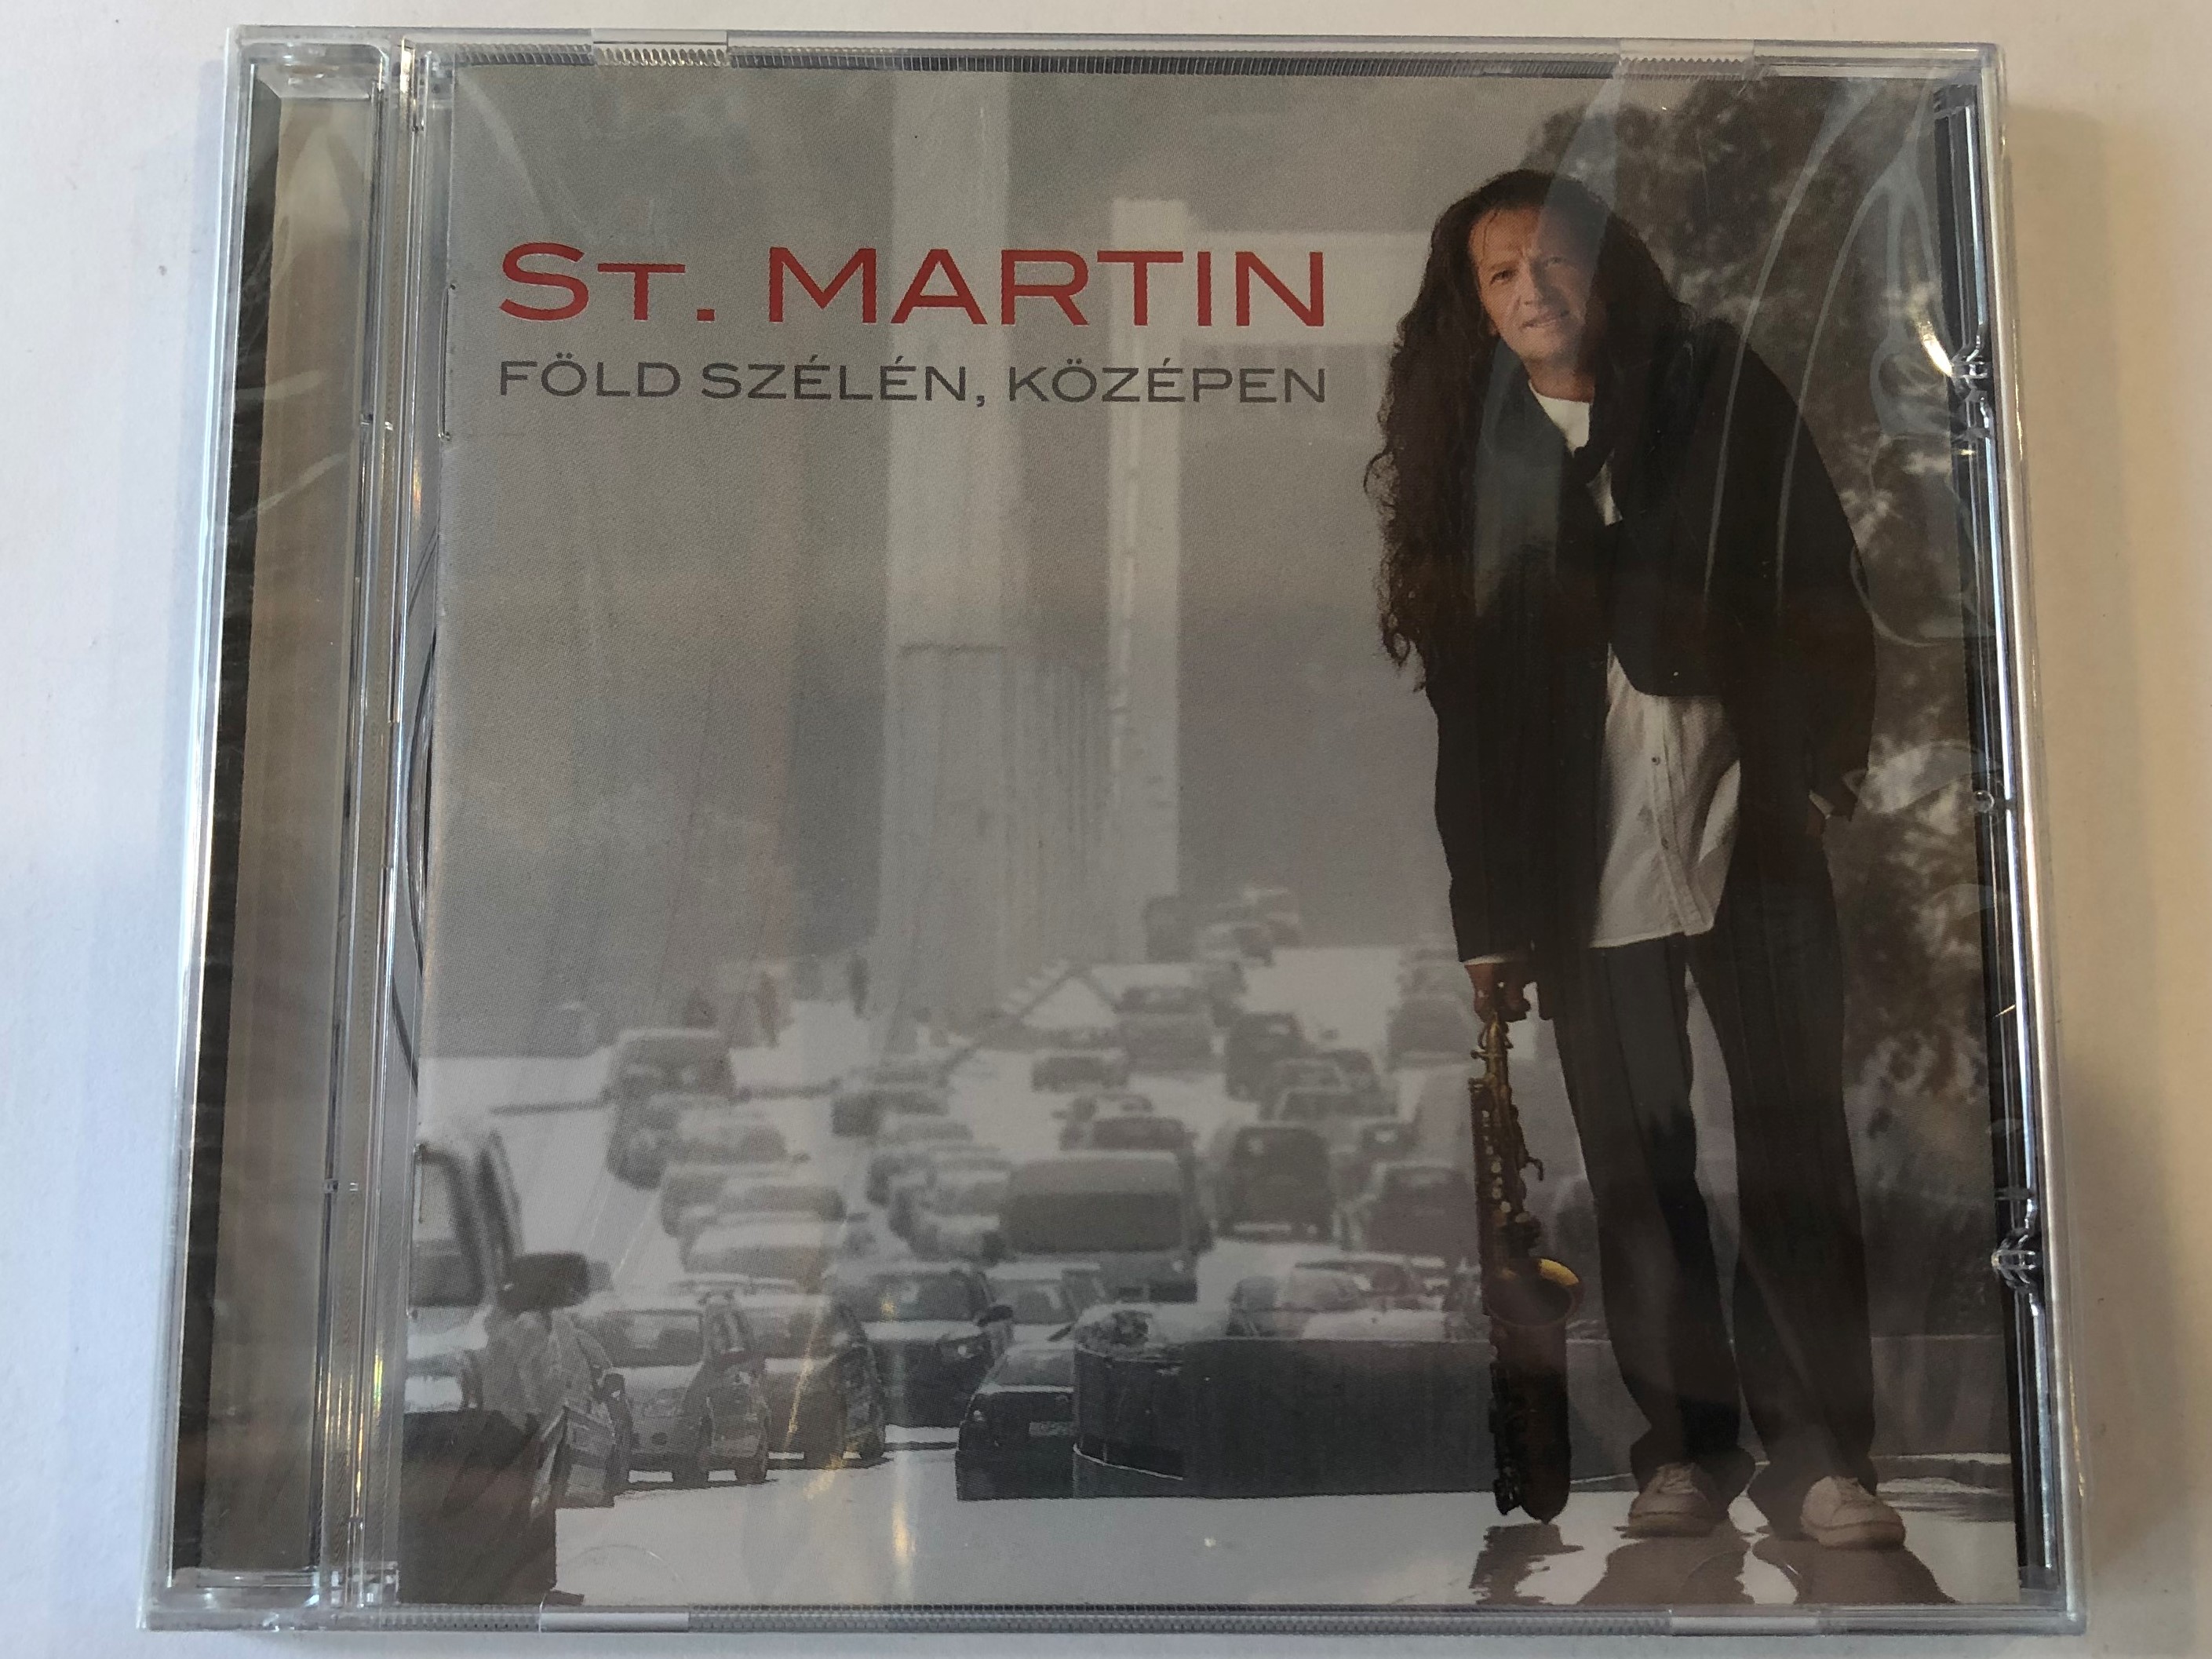 st.-martin-f-ld-sz-l-n-k-z-pen-tom-tom-records-audio-cd-2010-ttcd146-1-.jpg